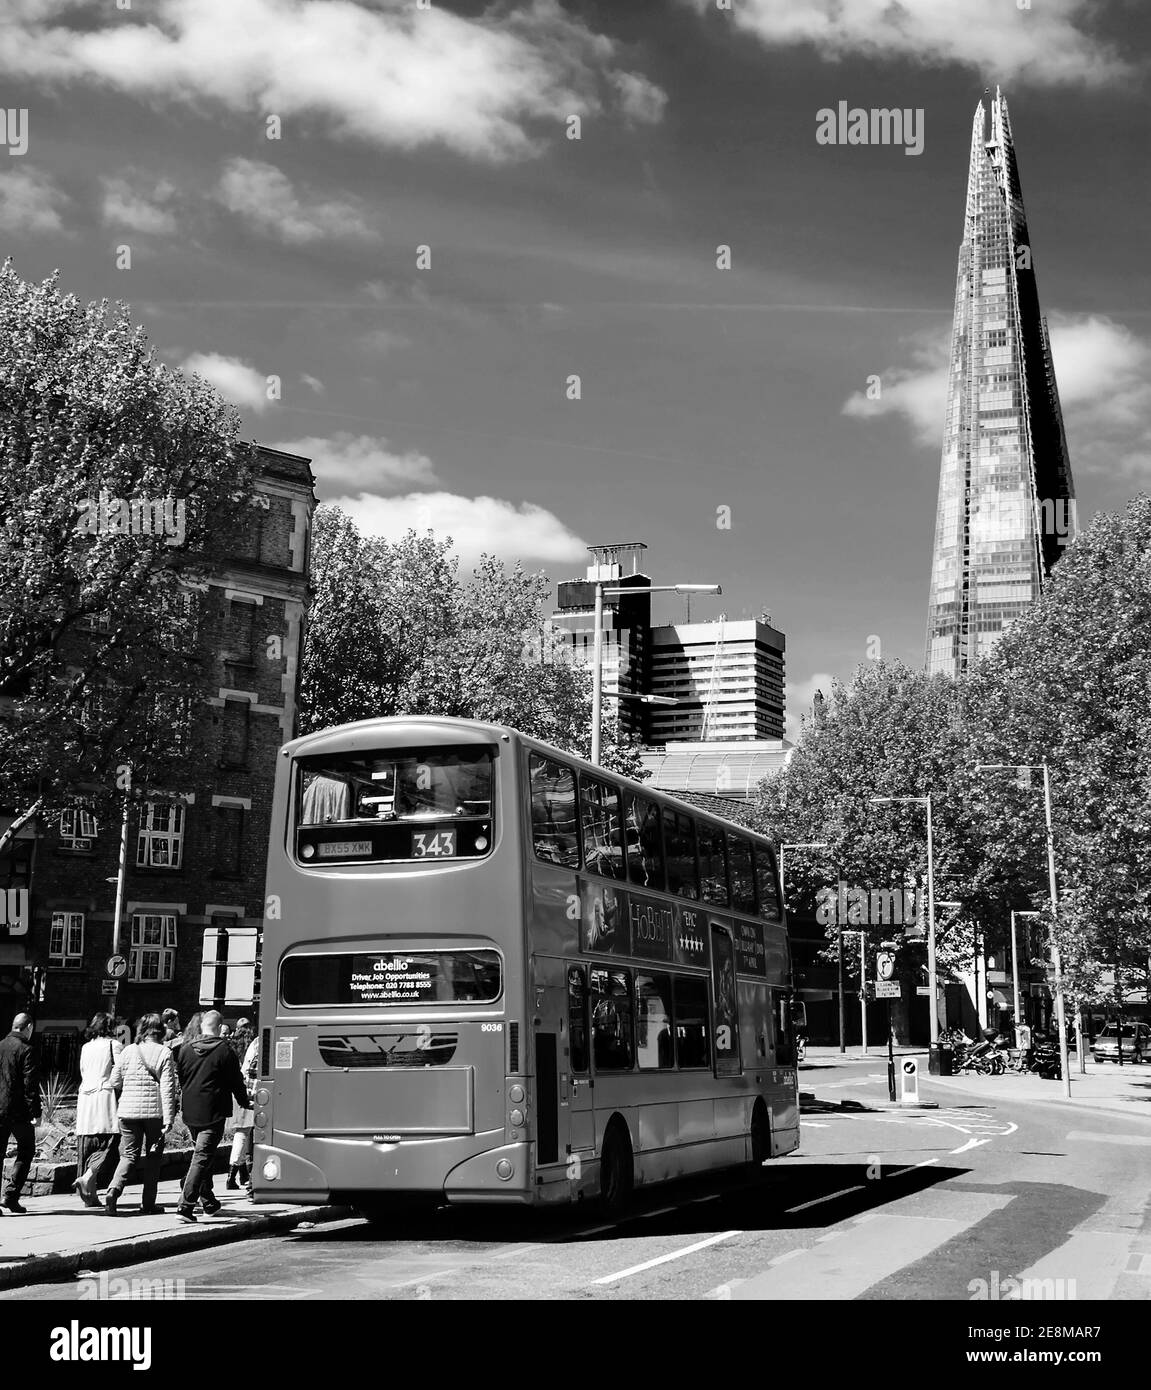 LONDRES, ANGLETERRE, Royaume-Uni - 3 MAI 2014 : bus rouge à impériale et gratte-ciel de Shard à l'arrière-plan. Le Shard, construit en 2012 et debout à 310 mètres, Banque D'Images